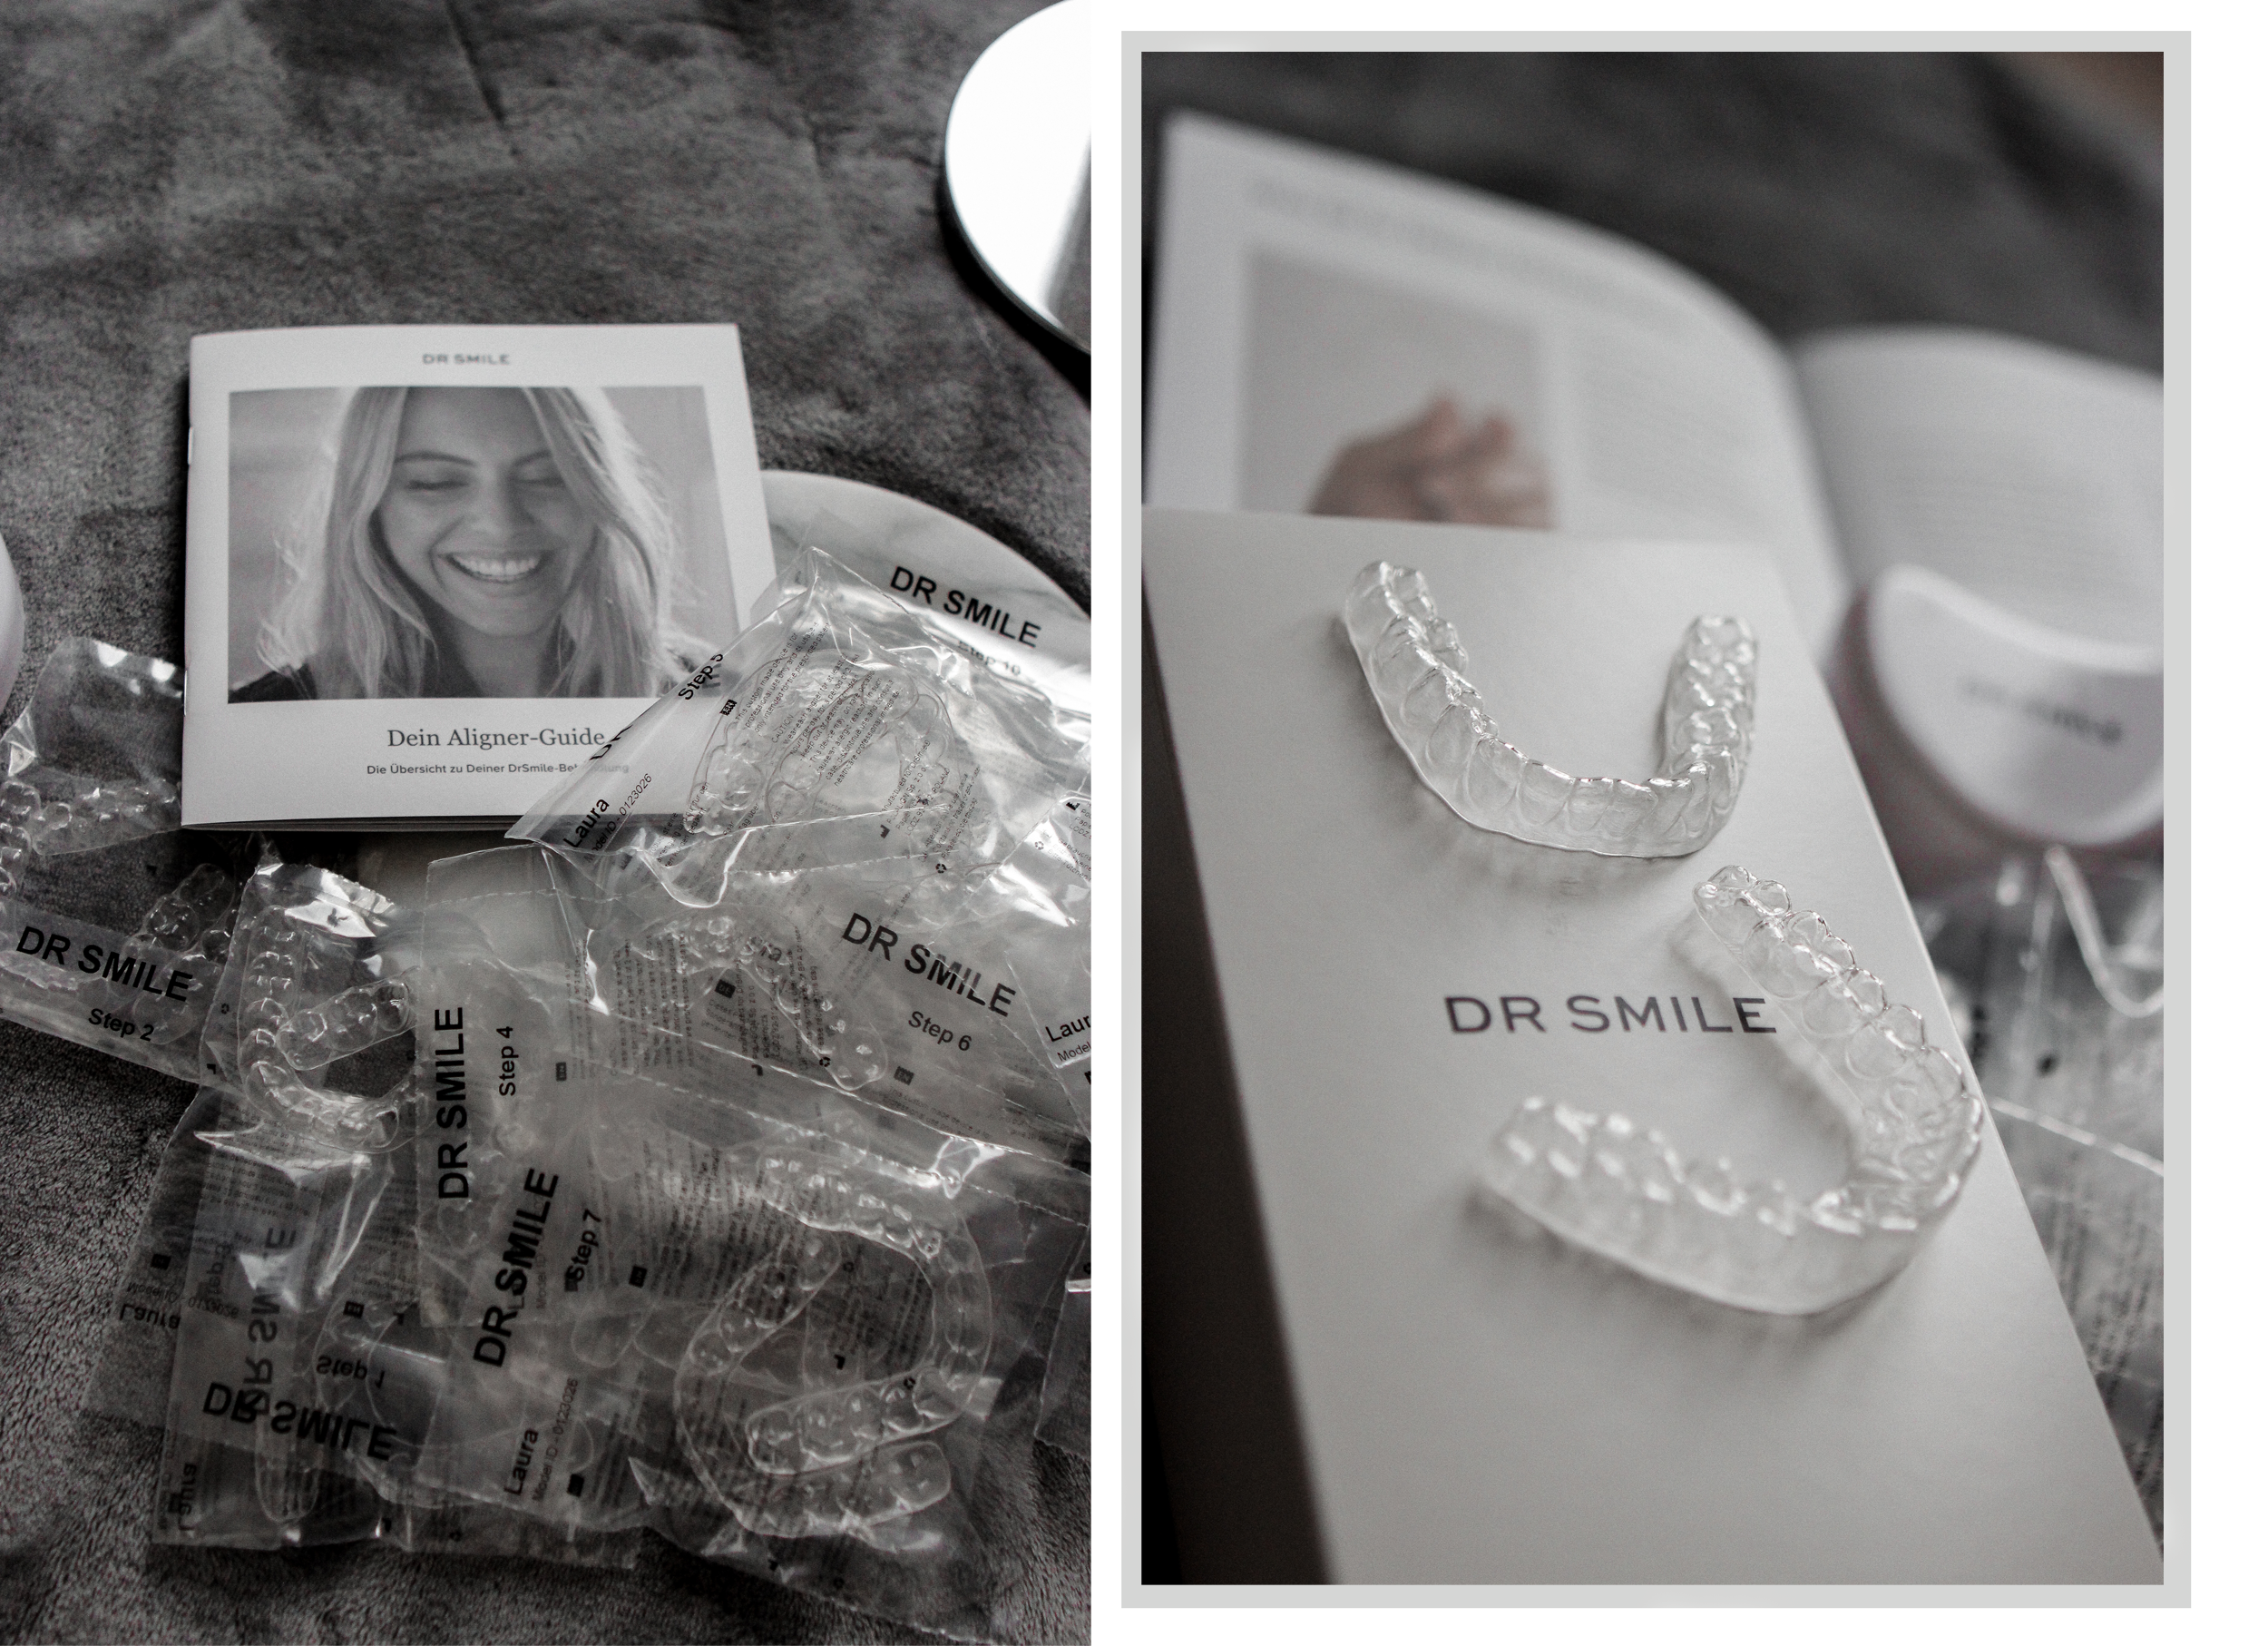 lauralamode-blogger-dr smile-berlin-lifestyle blogger-zahnschienen-transparente zahnschienen-dr smile review-fashionblogger-beauty